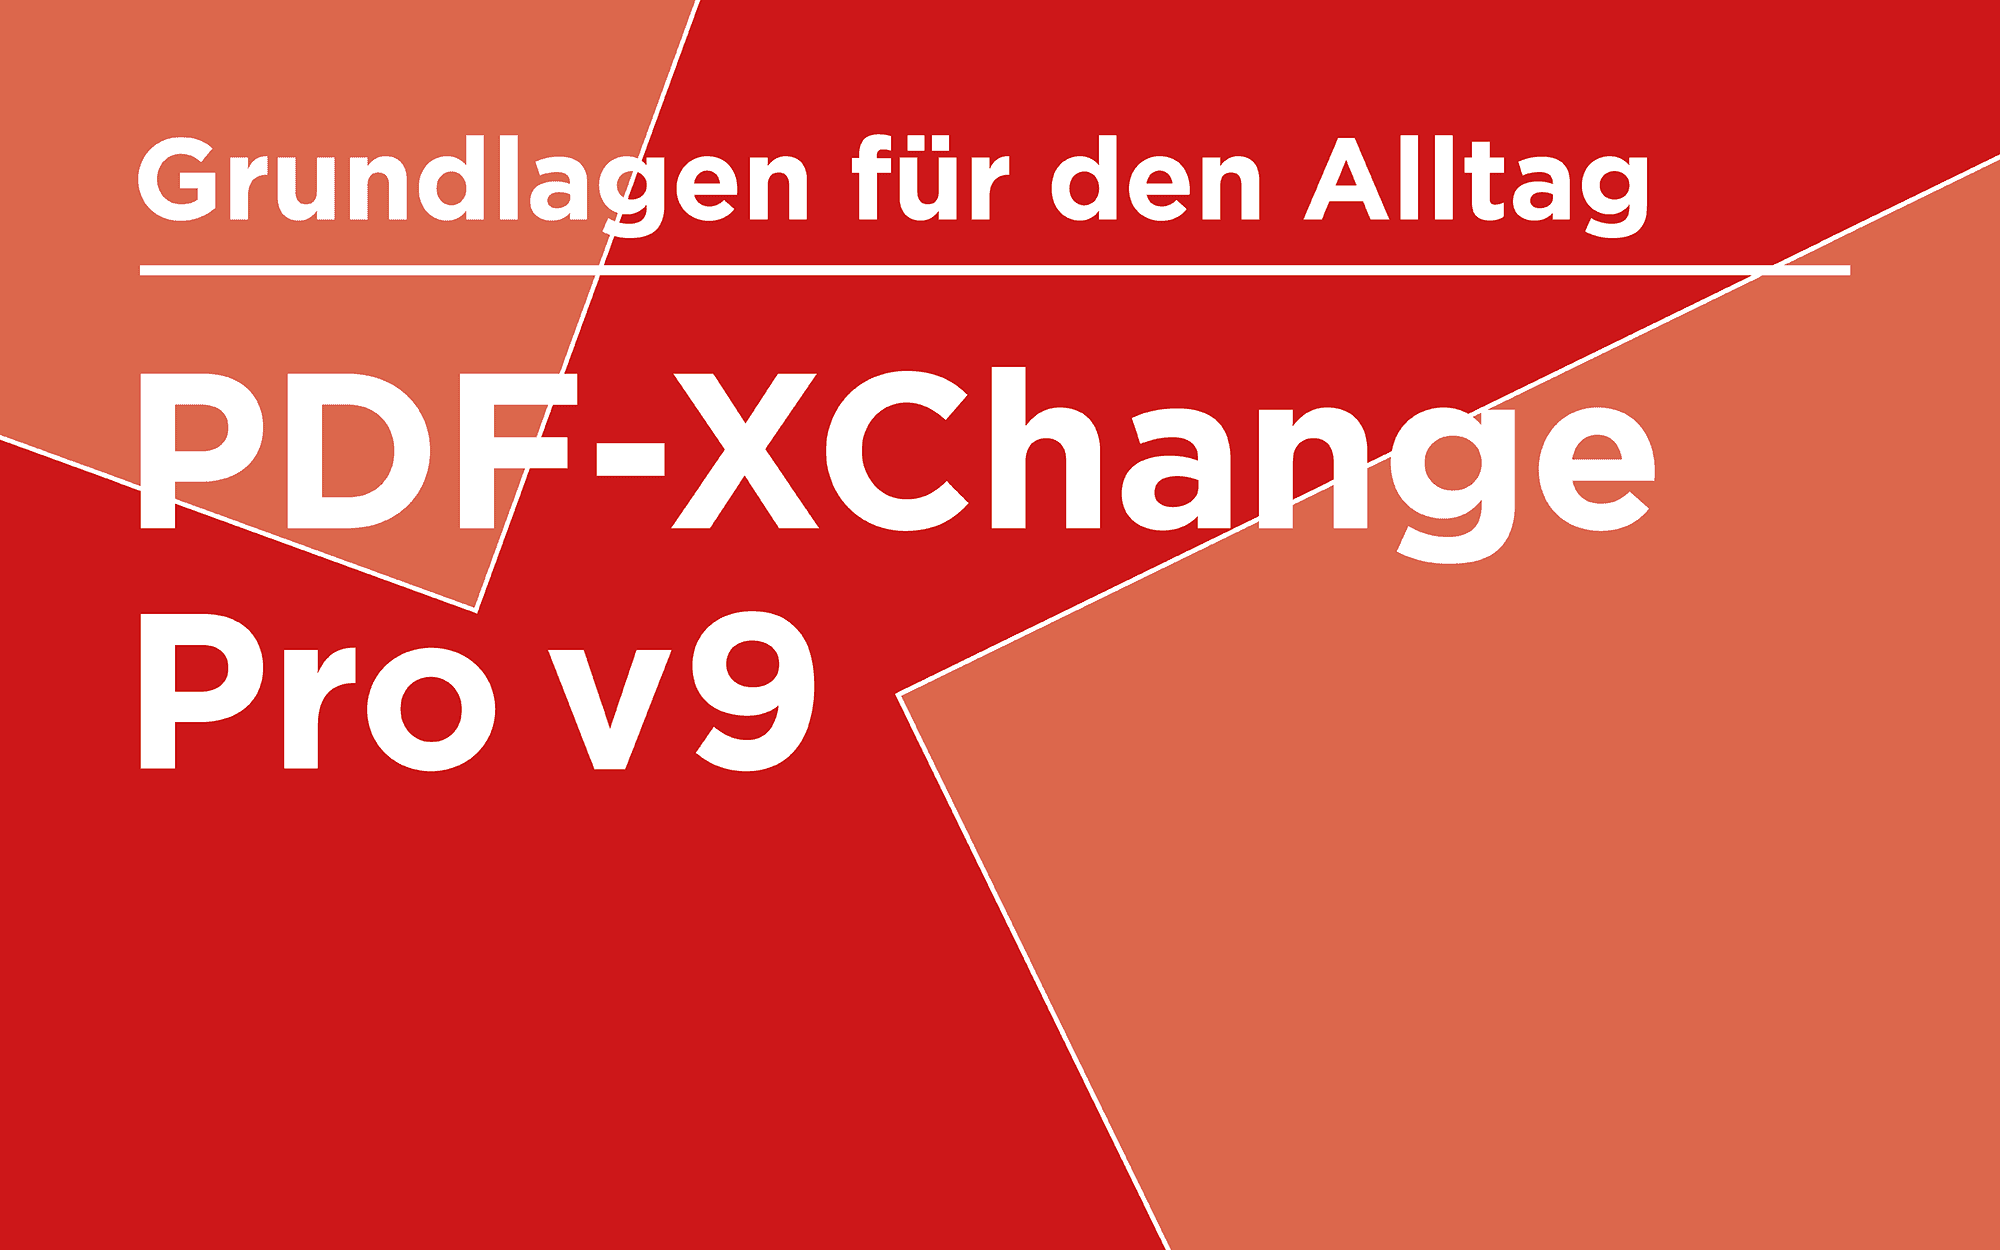 PDF-XChange Pro v9 – Grundlagen für den Office-Alltag